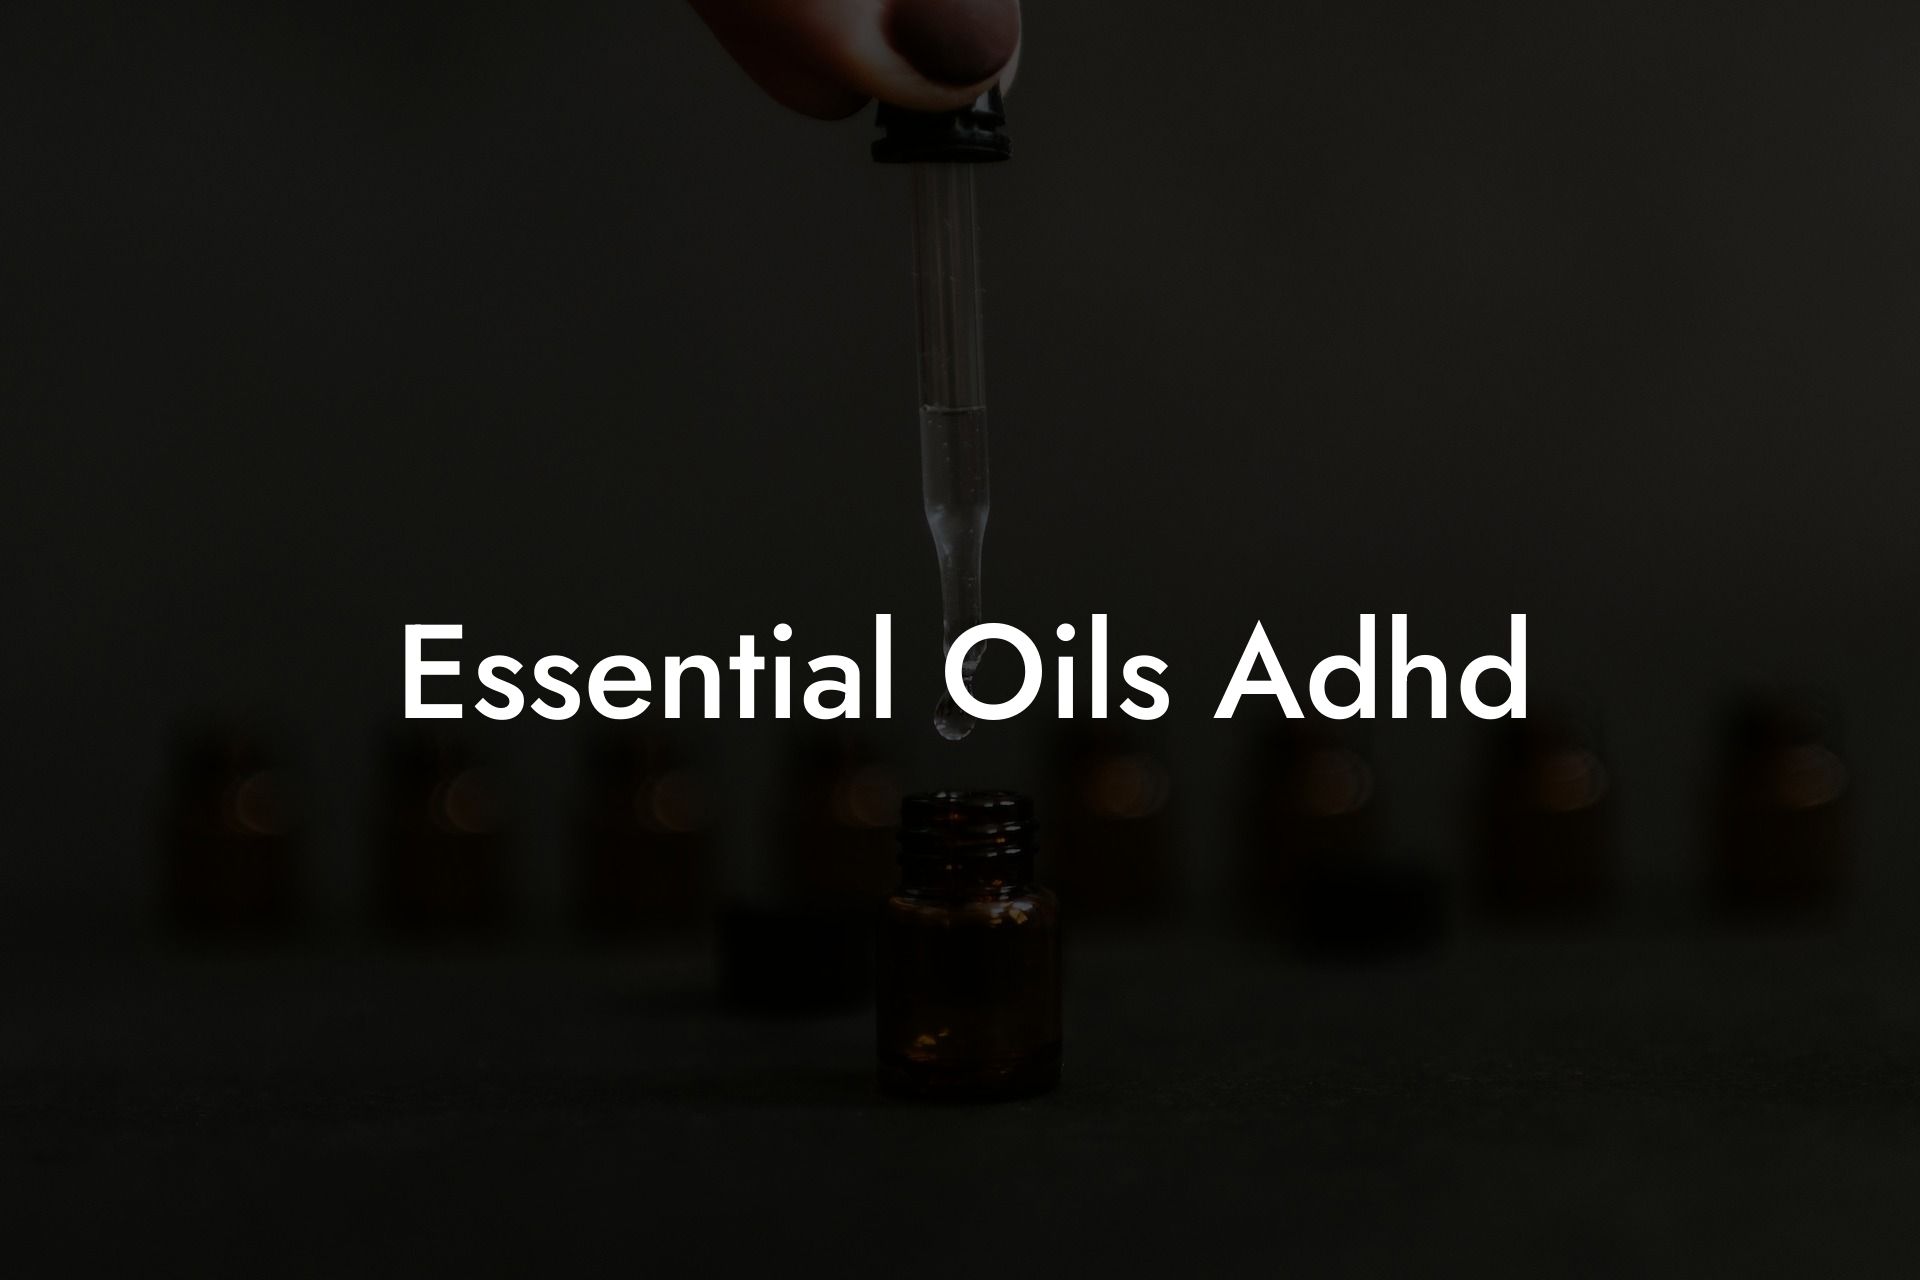 Essential Oils Adhd